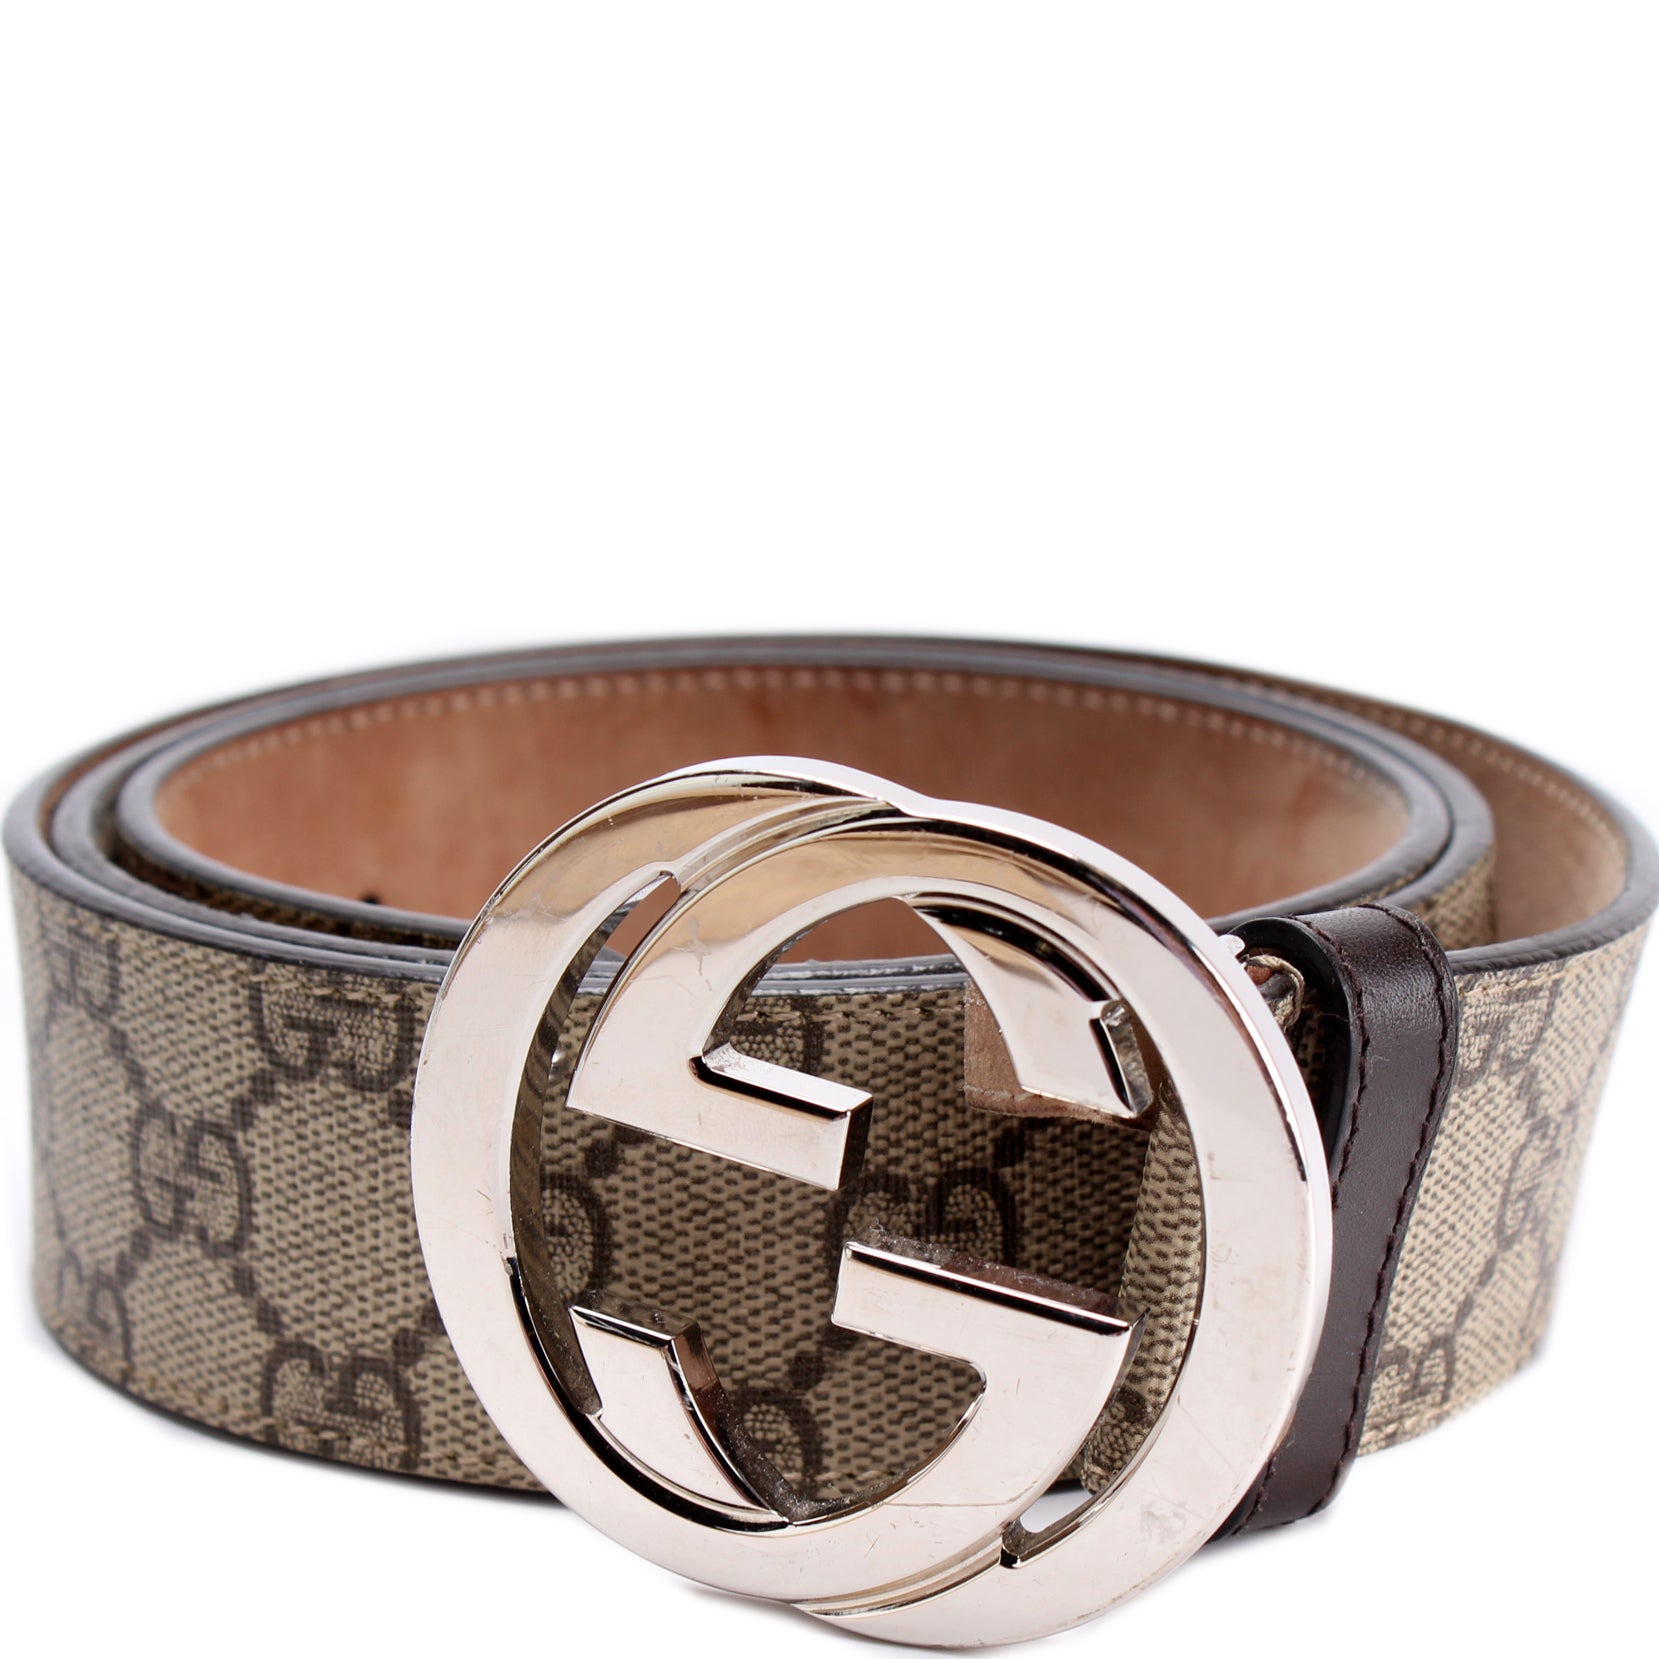 411924 GG Supreme Belt Size 100/40 – Keeks Designer Handbags